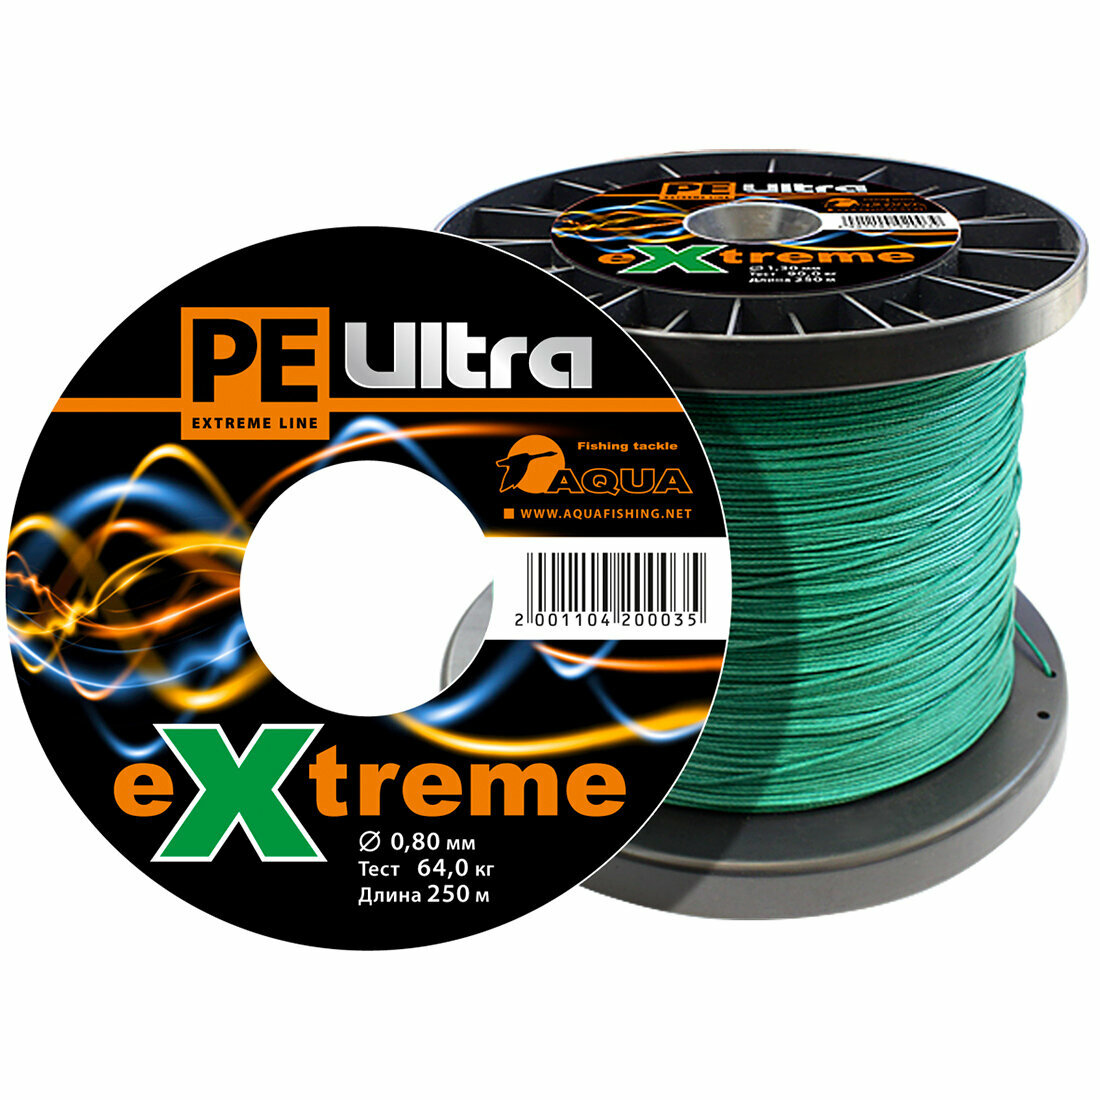 Плетеный шнур для рыбалки AQUA PE ULTRA EXTREME 0,80mm (цвет зеленый) 250m